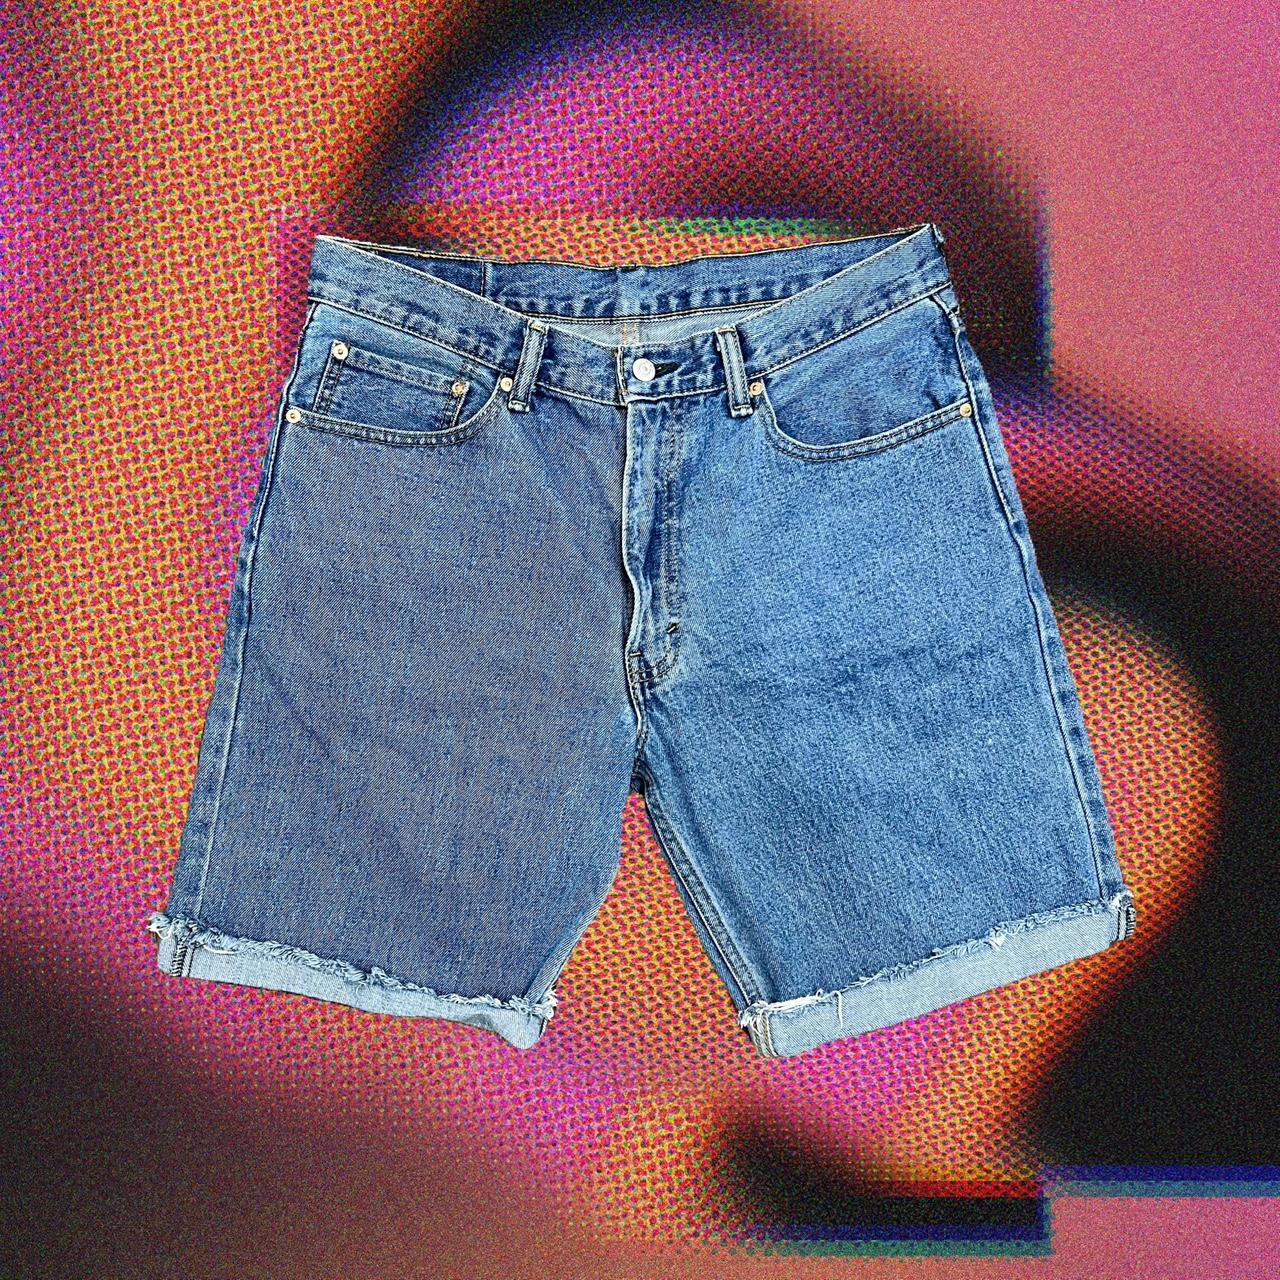 Kuhl Easy Rydr Men's Vintage Patina Dye Jeans Brown - Depop